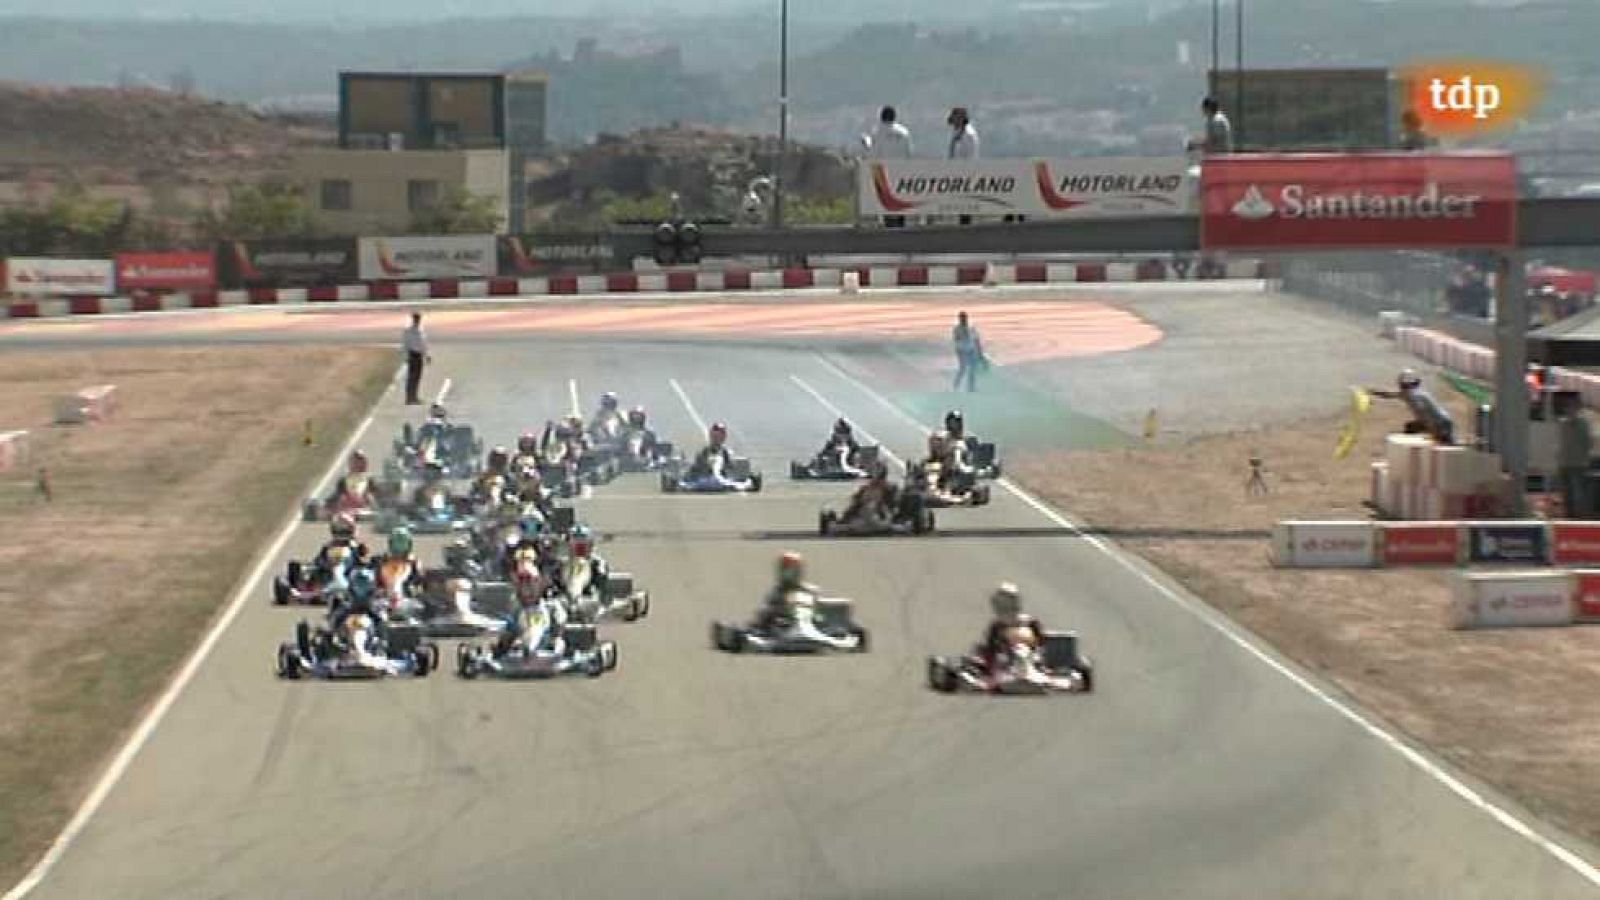 Automovilismo - Campeonato de España de Karting. Prueba MotorLand